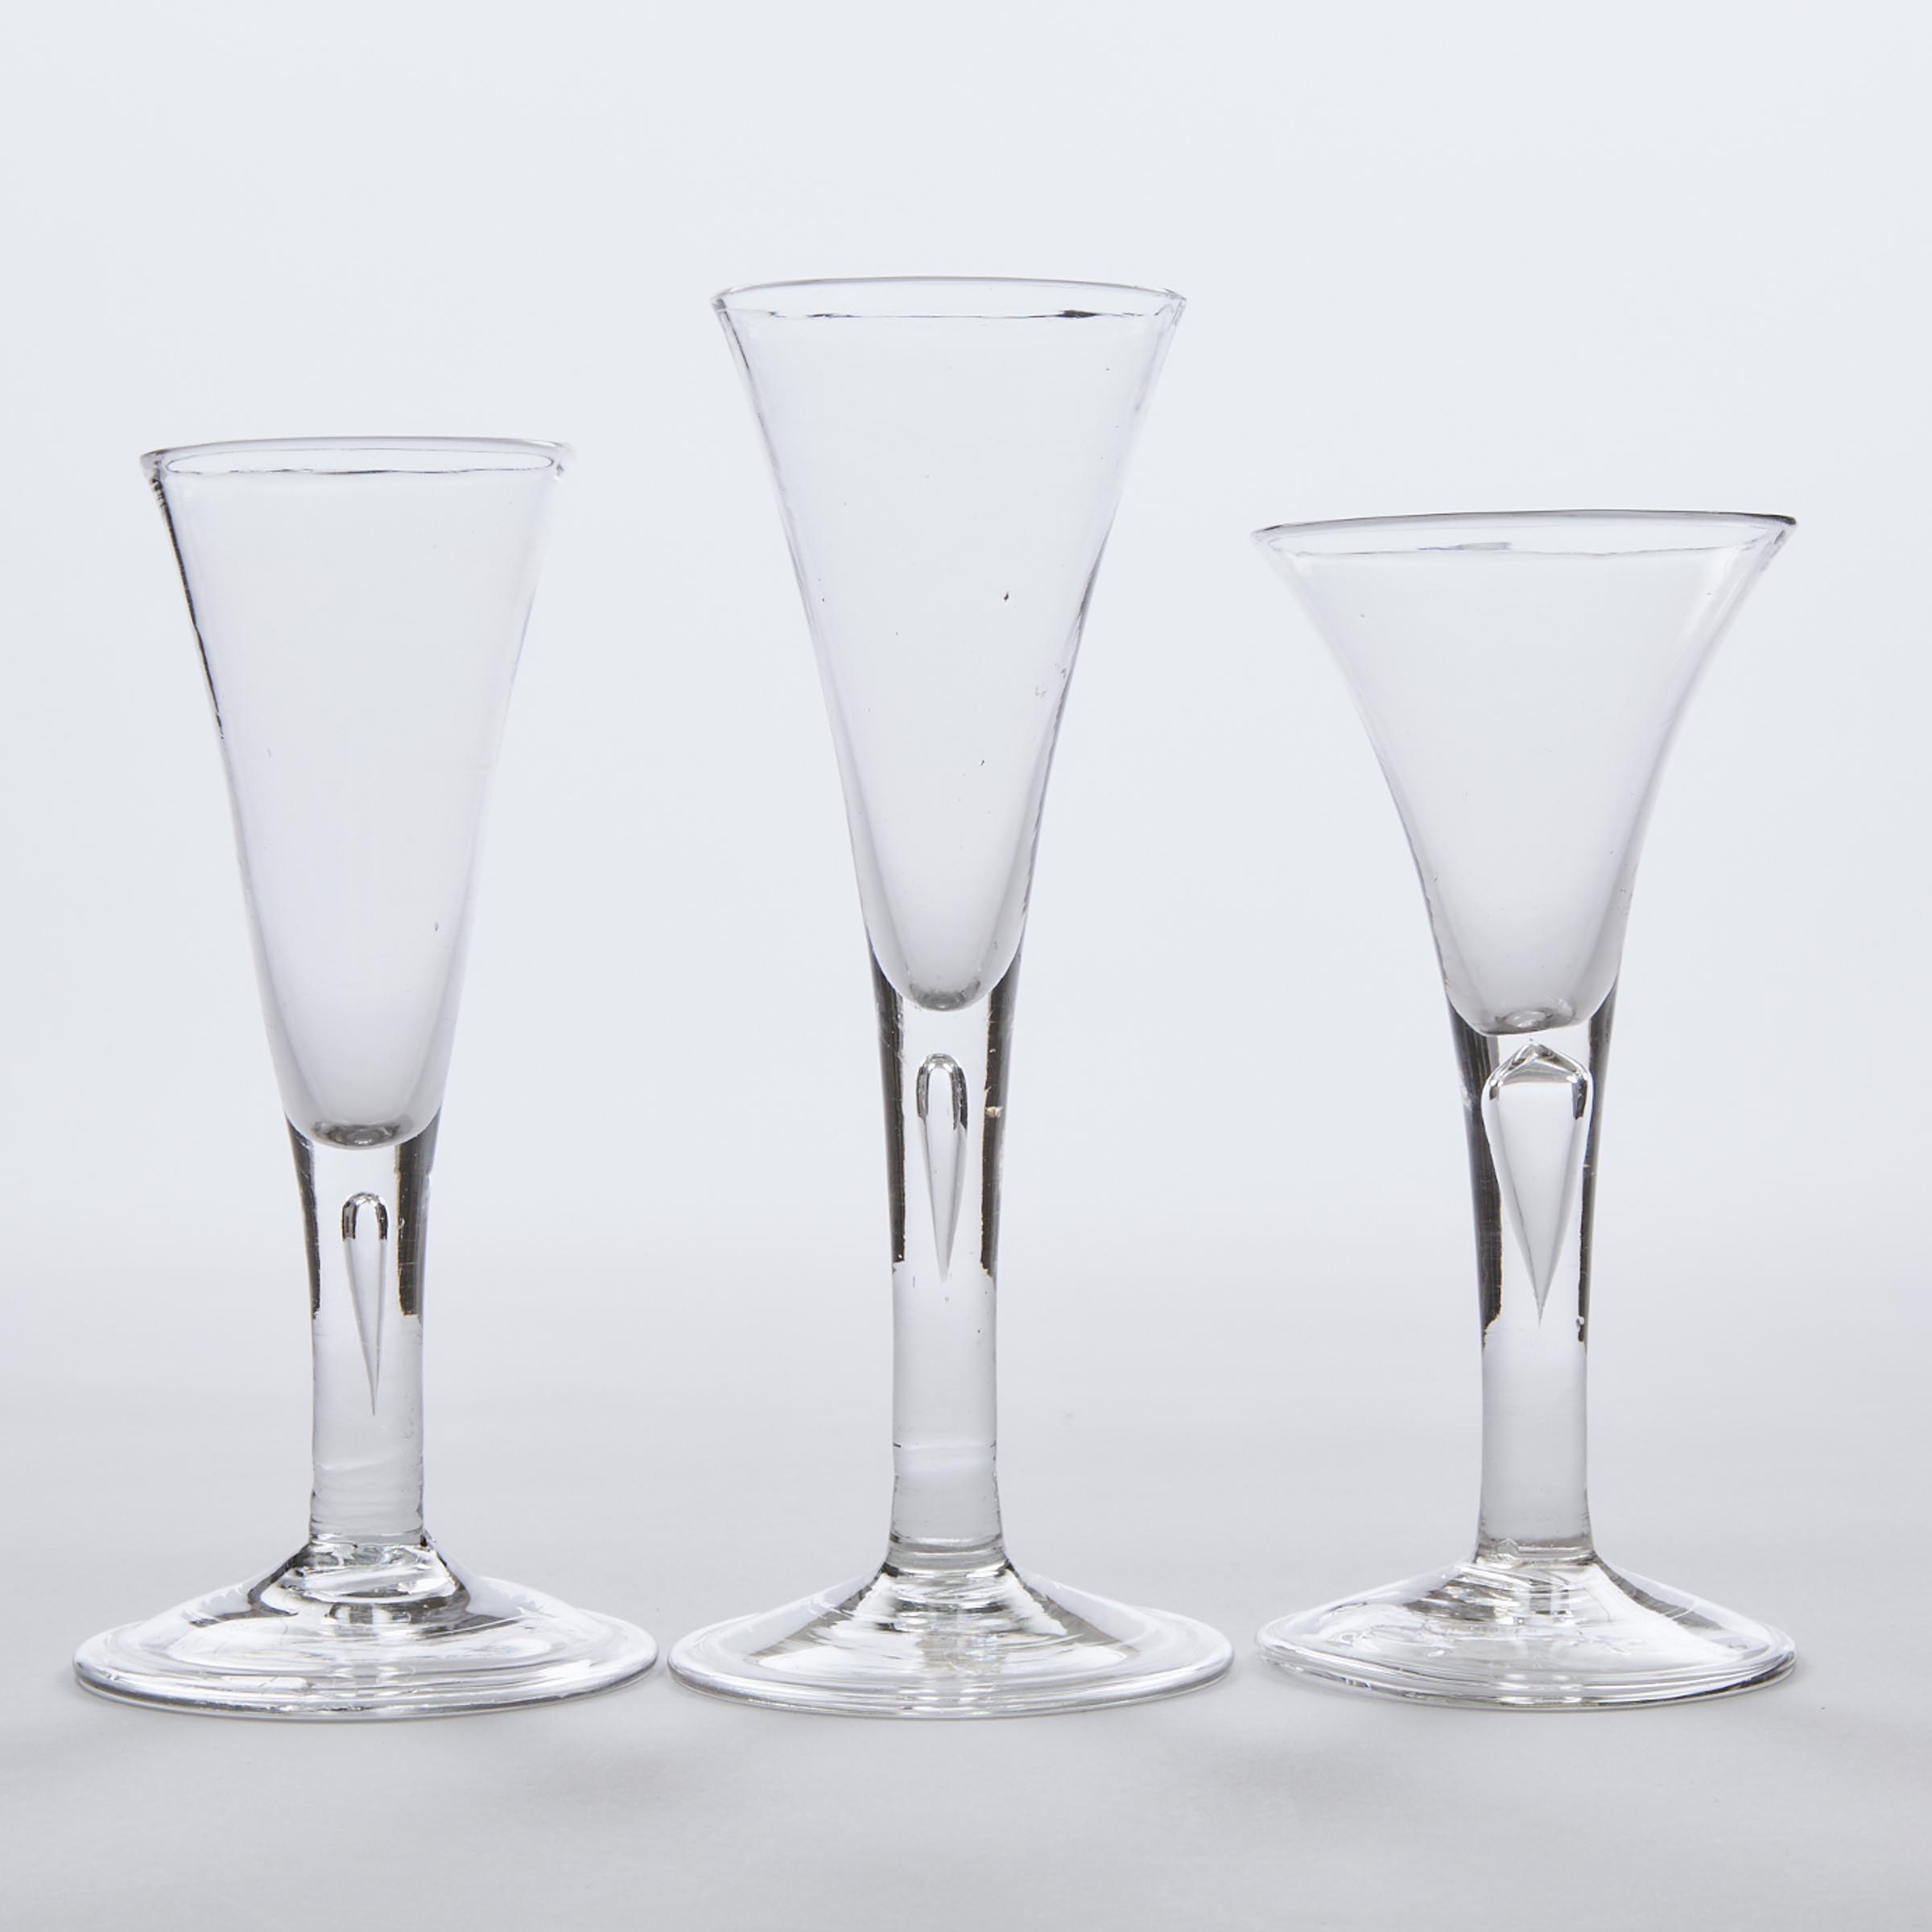 Three English Teared Stemmed Wine Glasses, mid-18th century